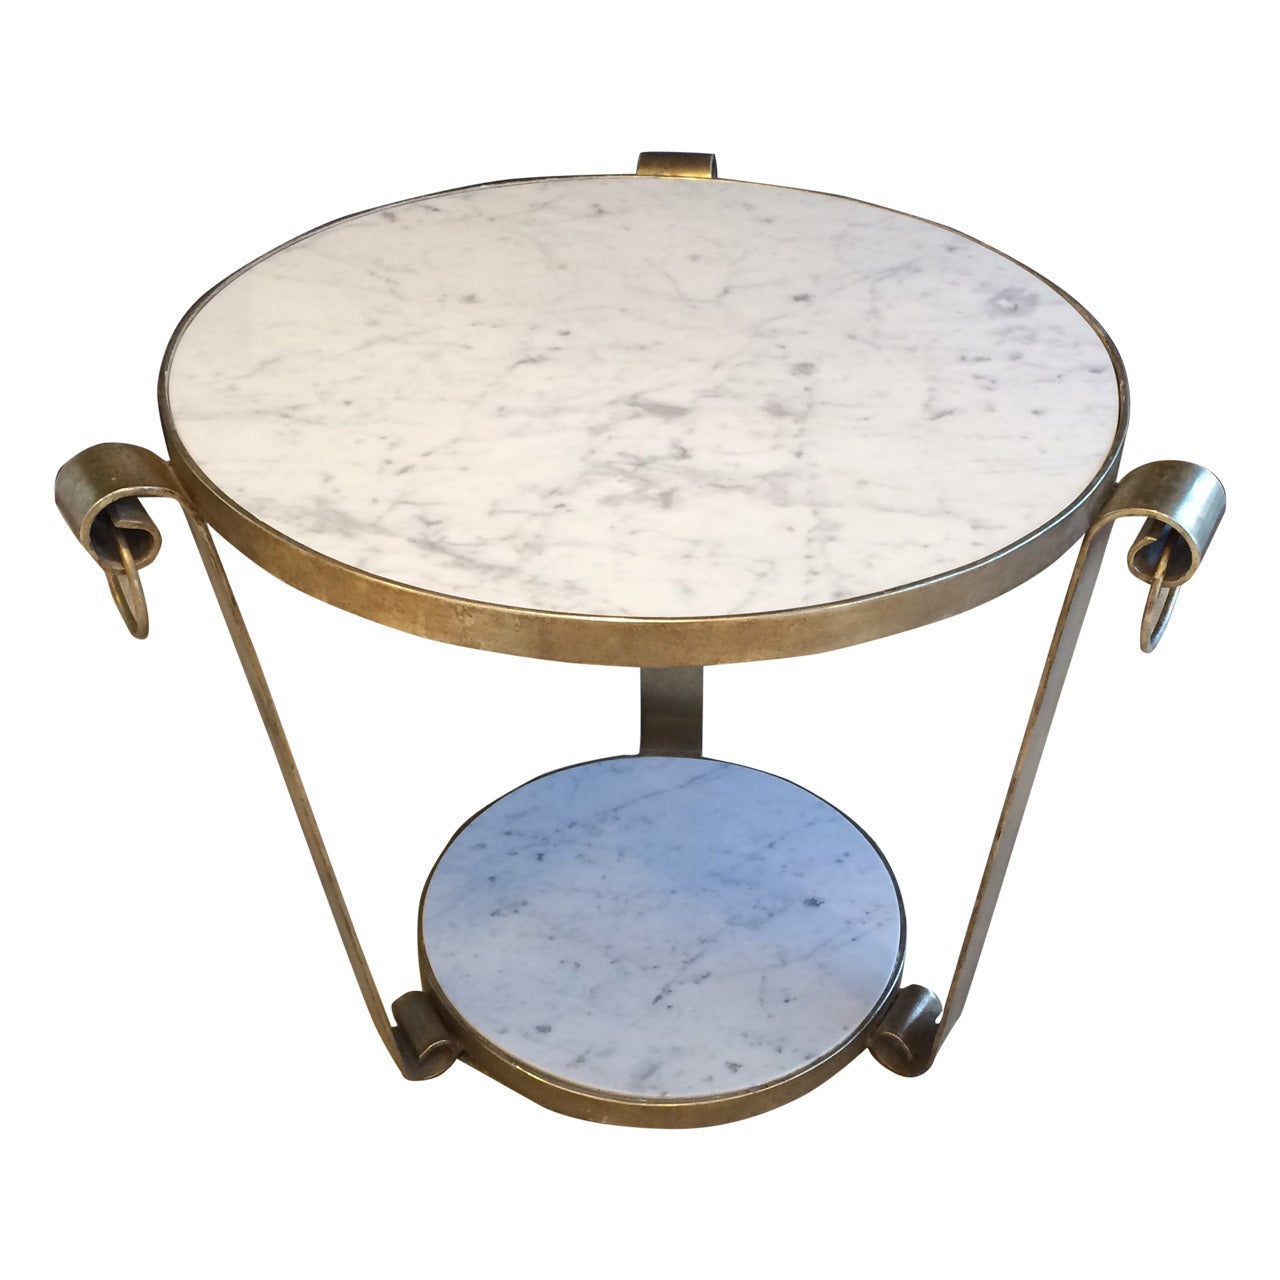 Table en fer forgé de l'époque médiévale avec feuille d'or blanc et marbre